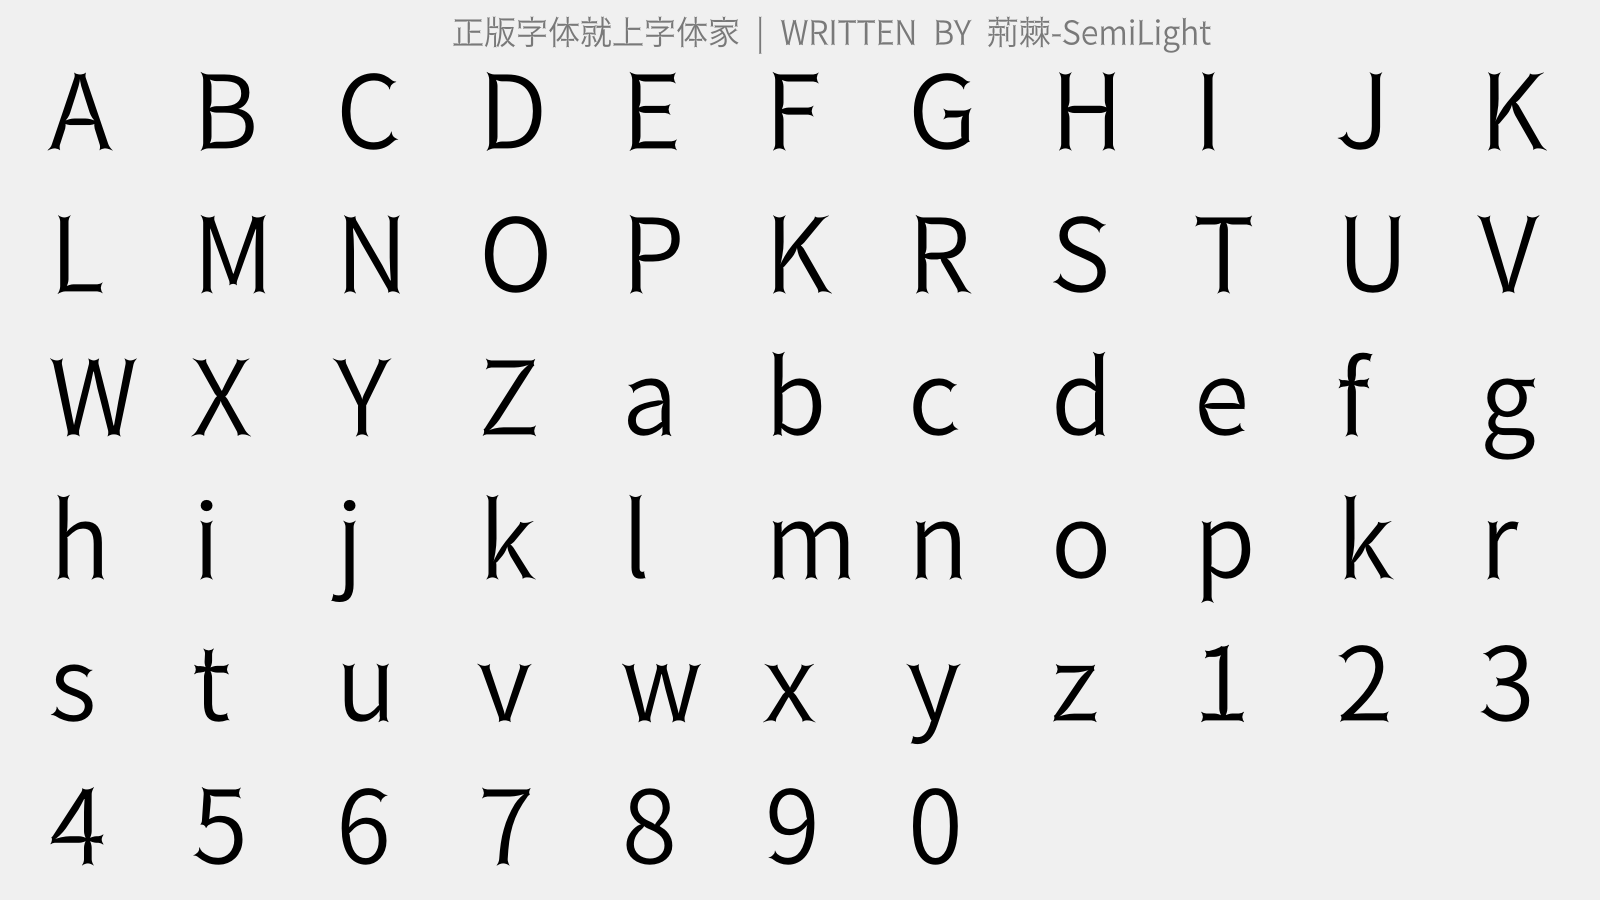 荆棘-SemiLight - 大写字母/小写字母/数字